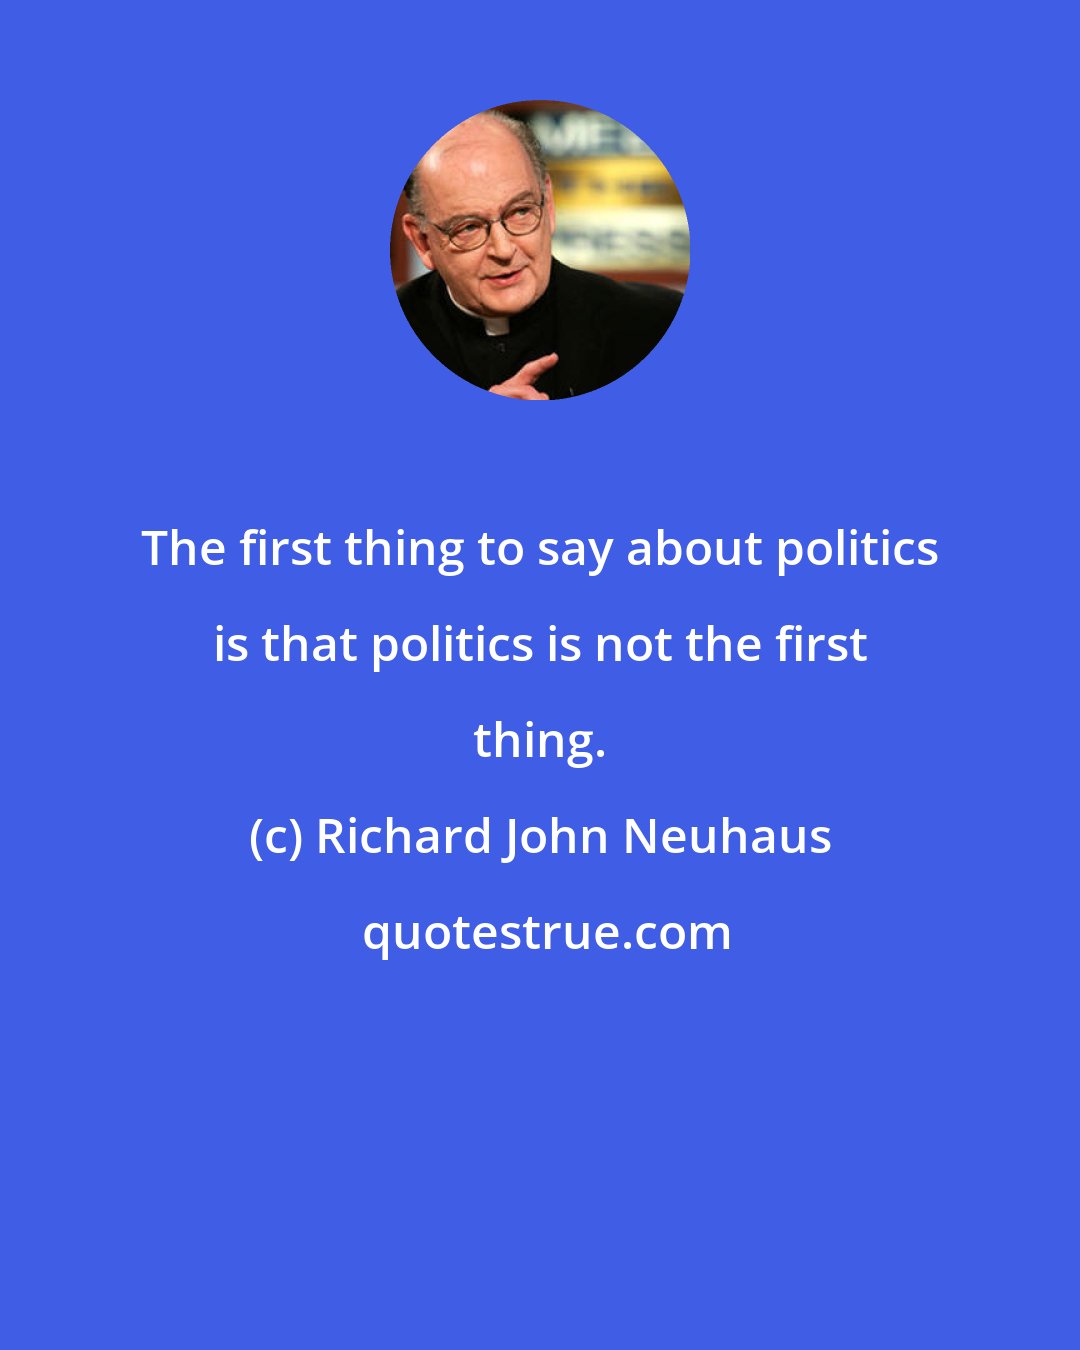 Richard John Neuhaus: The first thing to say about politics is that politics is not the first thing.